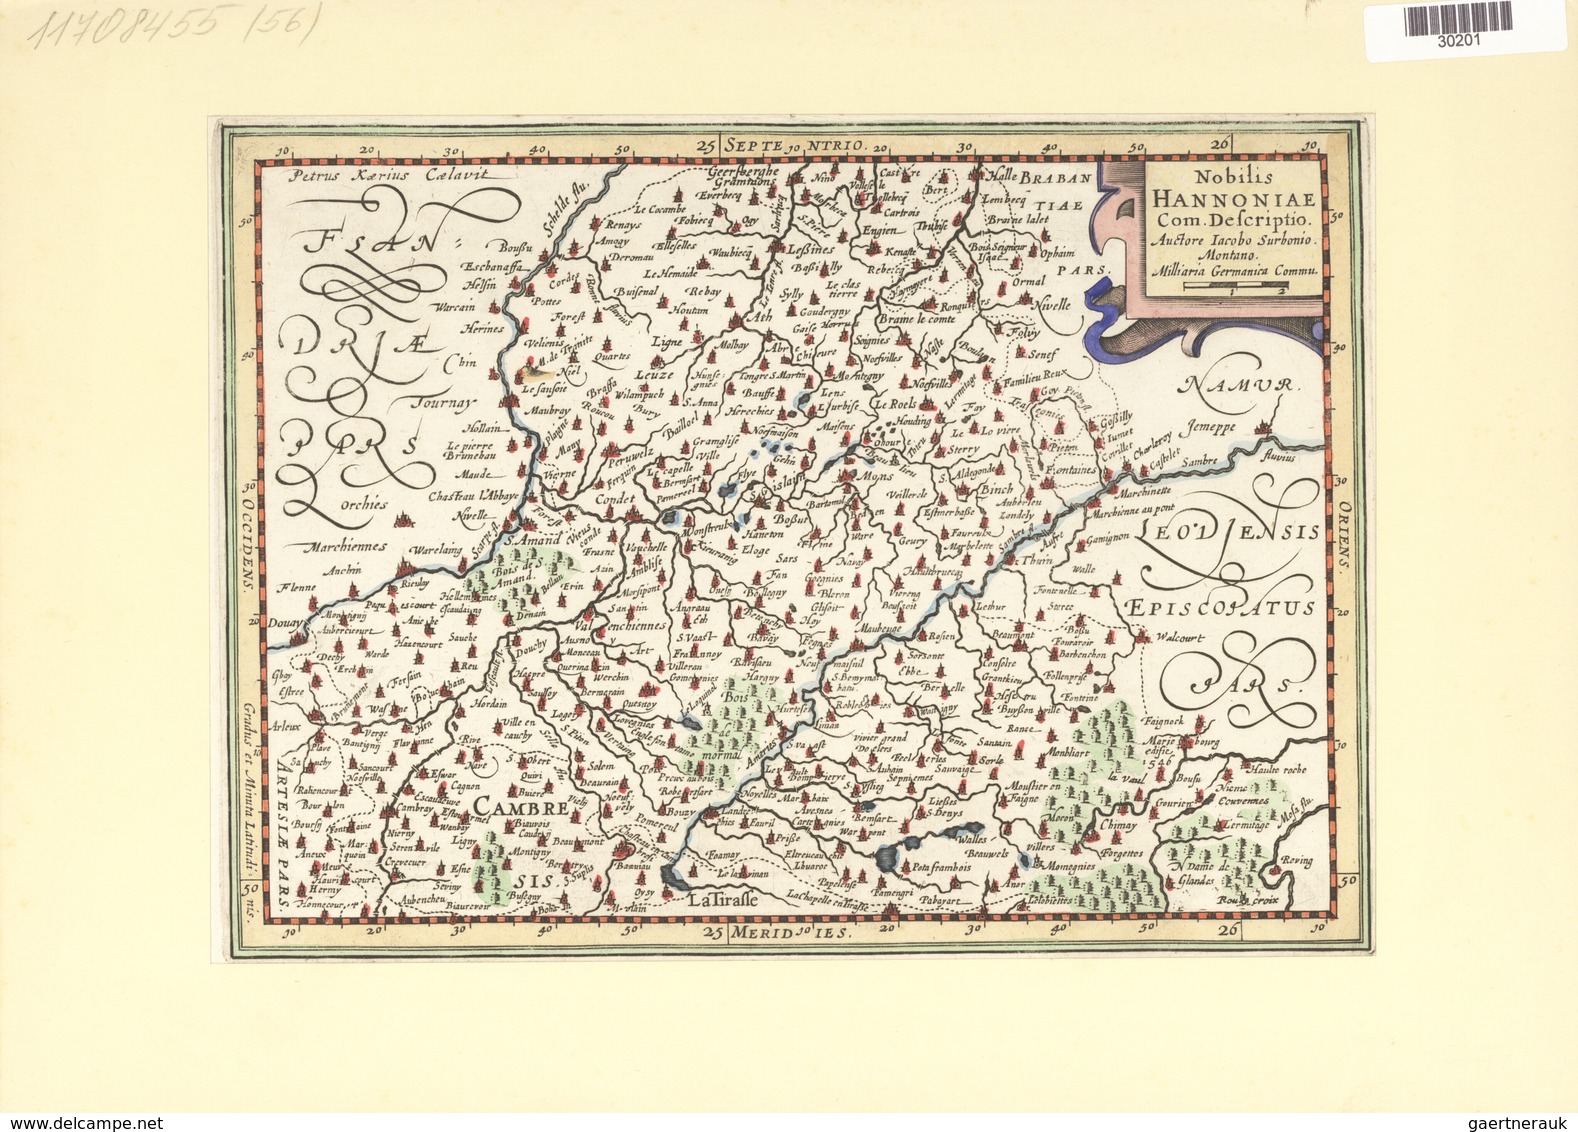 Landkarten Und Stiche: 1734. Nobilis Hannoniae Com.Descriptio Auctore Jacob Surbonio Montana, By Jac - Geography